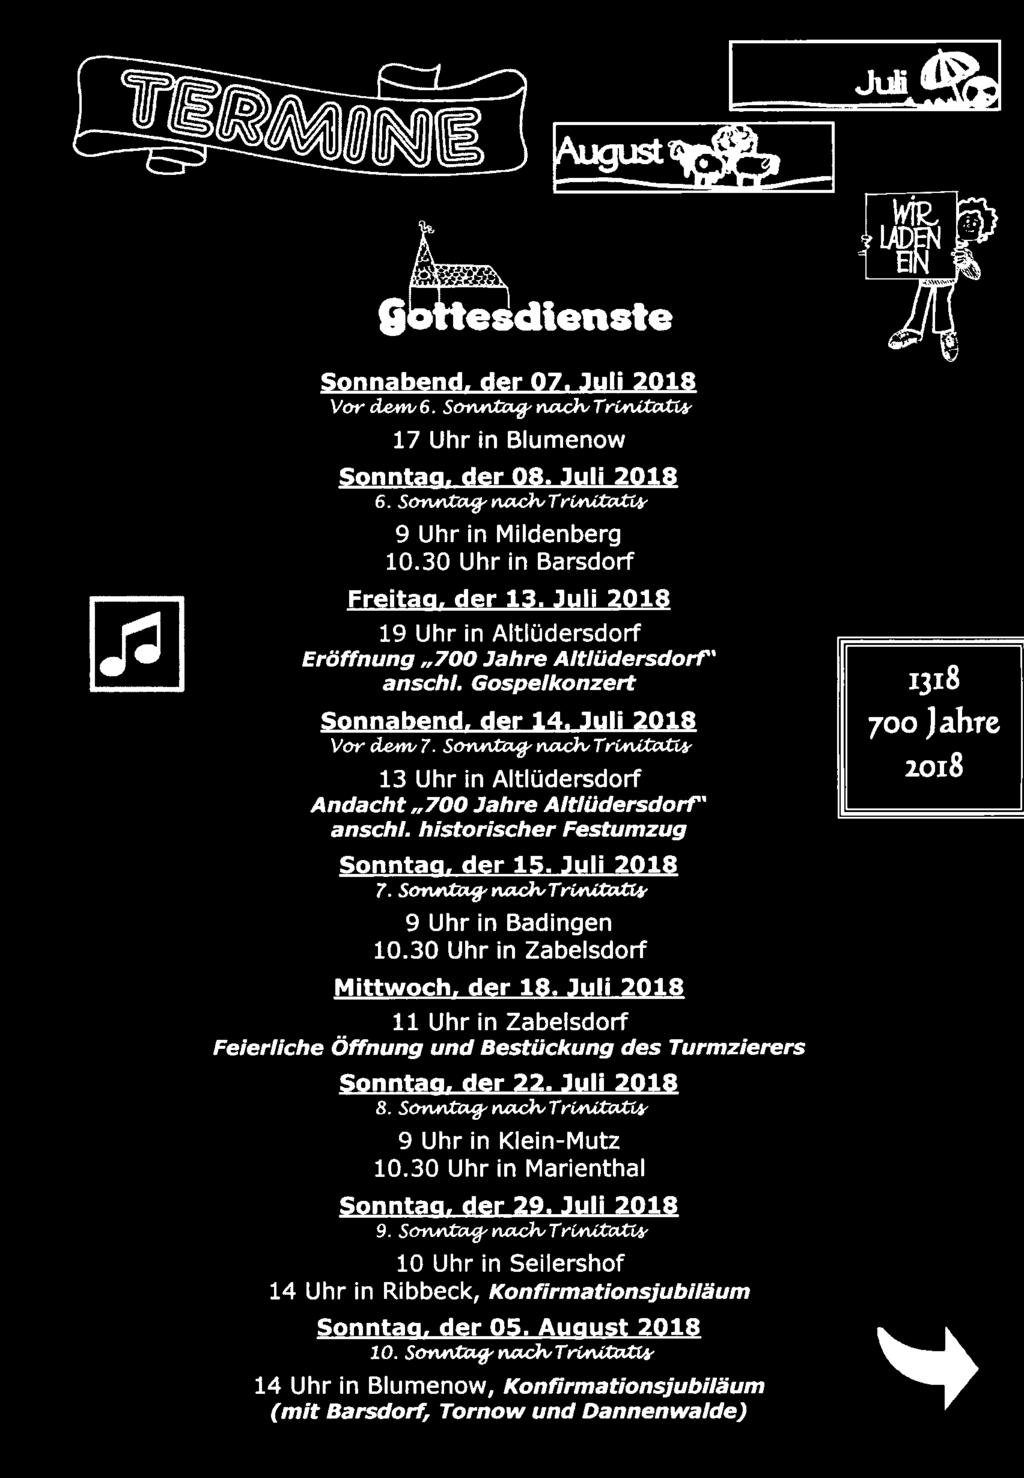 Juli 2018 11 Uhr in Zabelsdorf Feierliche Öffnung und Bestückung des Turmzierers Sonntag. der 22. Juli 2018 8. Son.rtt"Ct7J'~TrWkca-w 9 Uhr in Klein-Mutz 10.